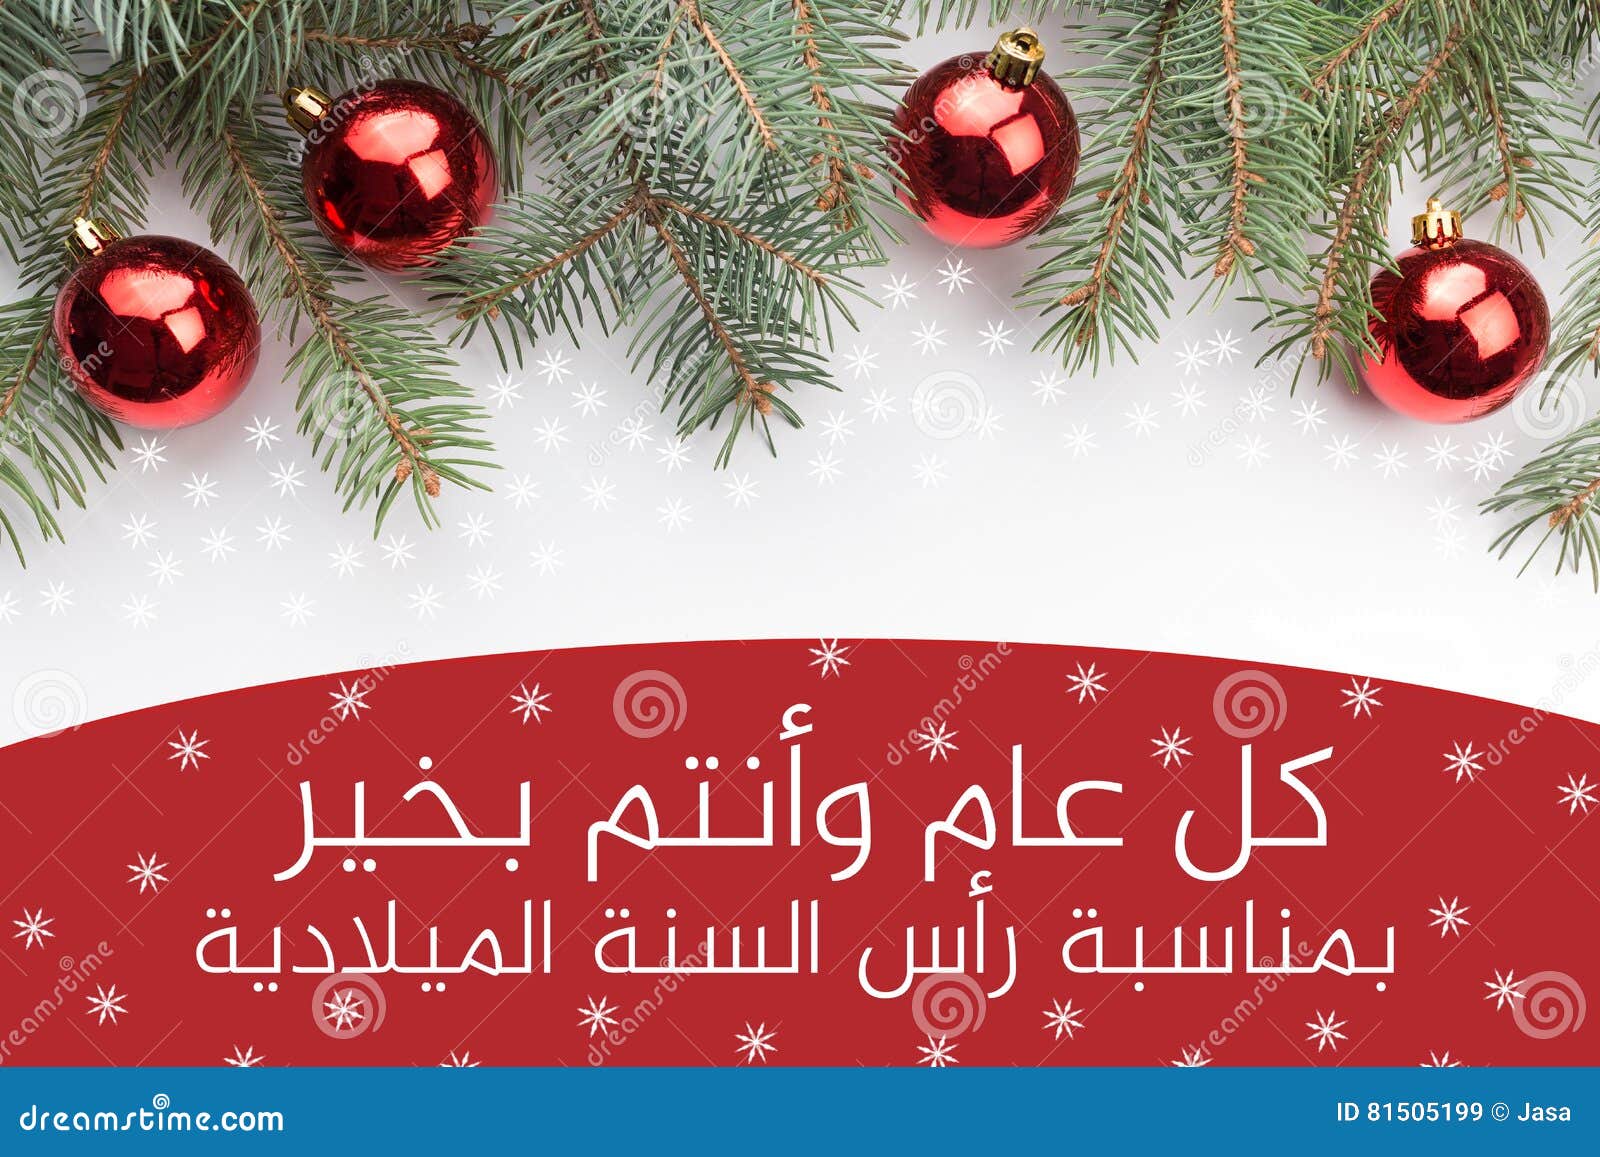 Buon Natale Arabo.Decorazioni Di Natale Con Il Saluto Del Nuovo Anno In Arabo Immagine Stock Immagine Di Festa Congratulazione 81505199